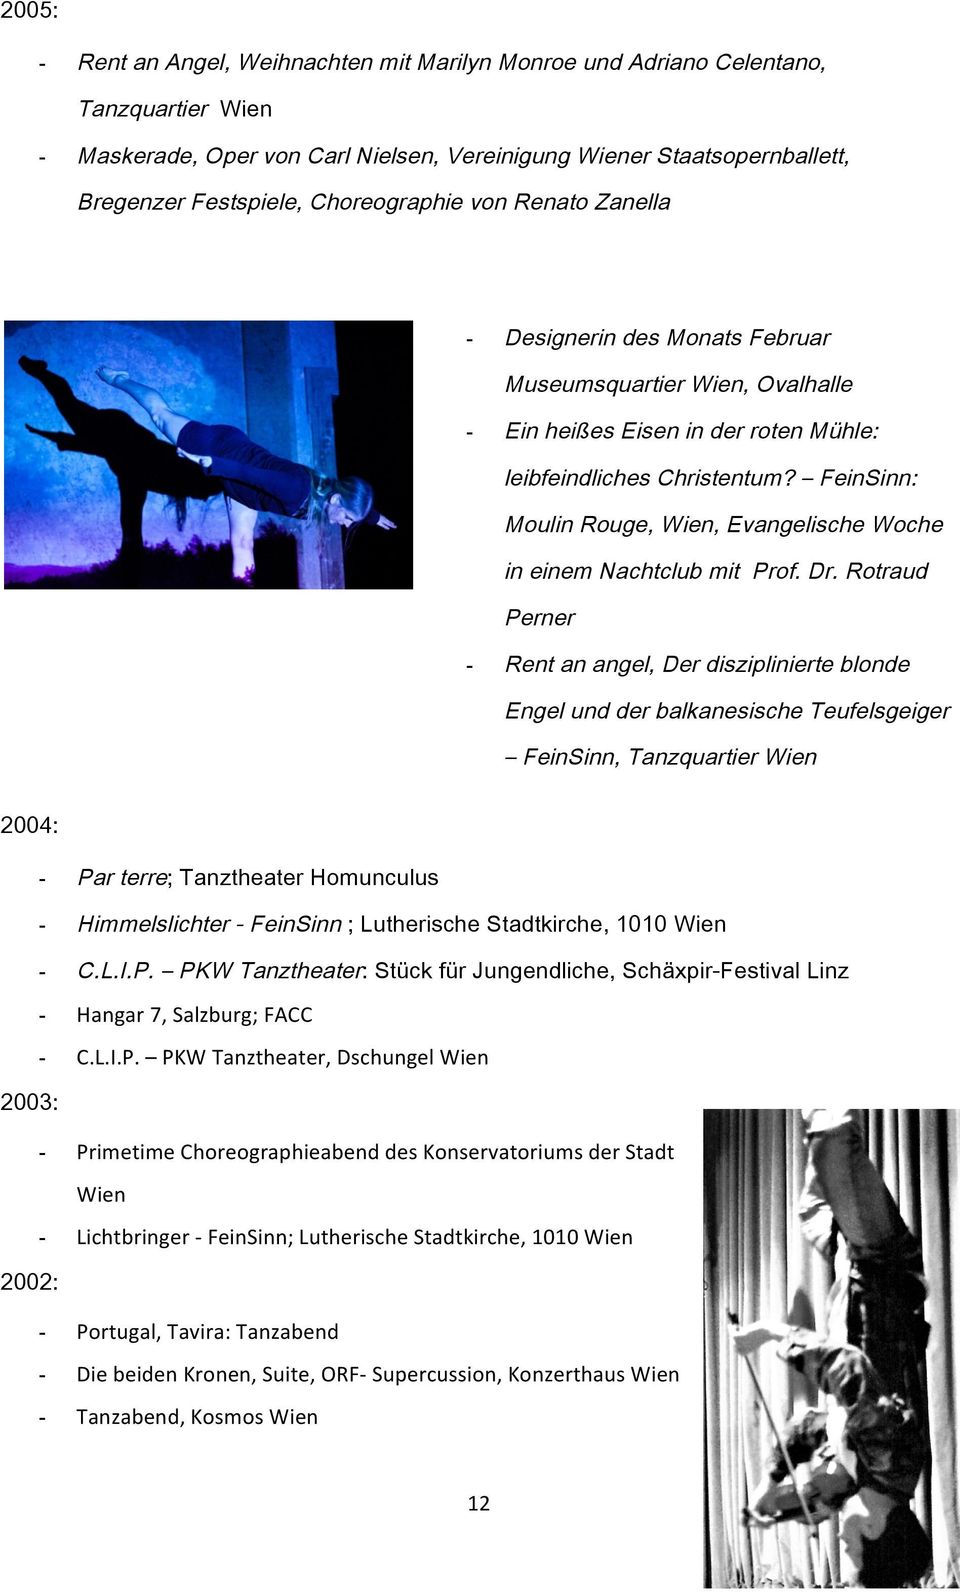 FeinSinn: Moulin Rouge, Wien, Evangelische Woche in einem Nachtclub mit Prof. Dr.